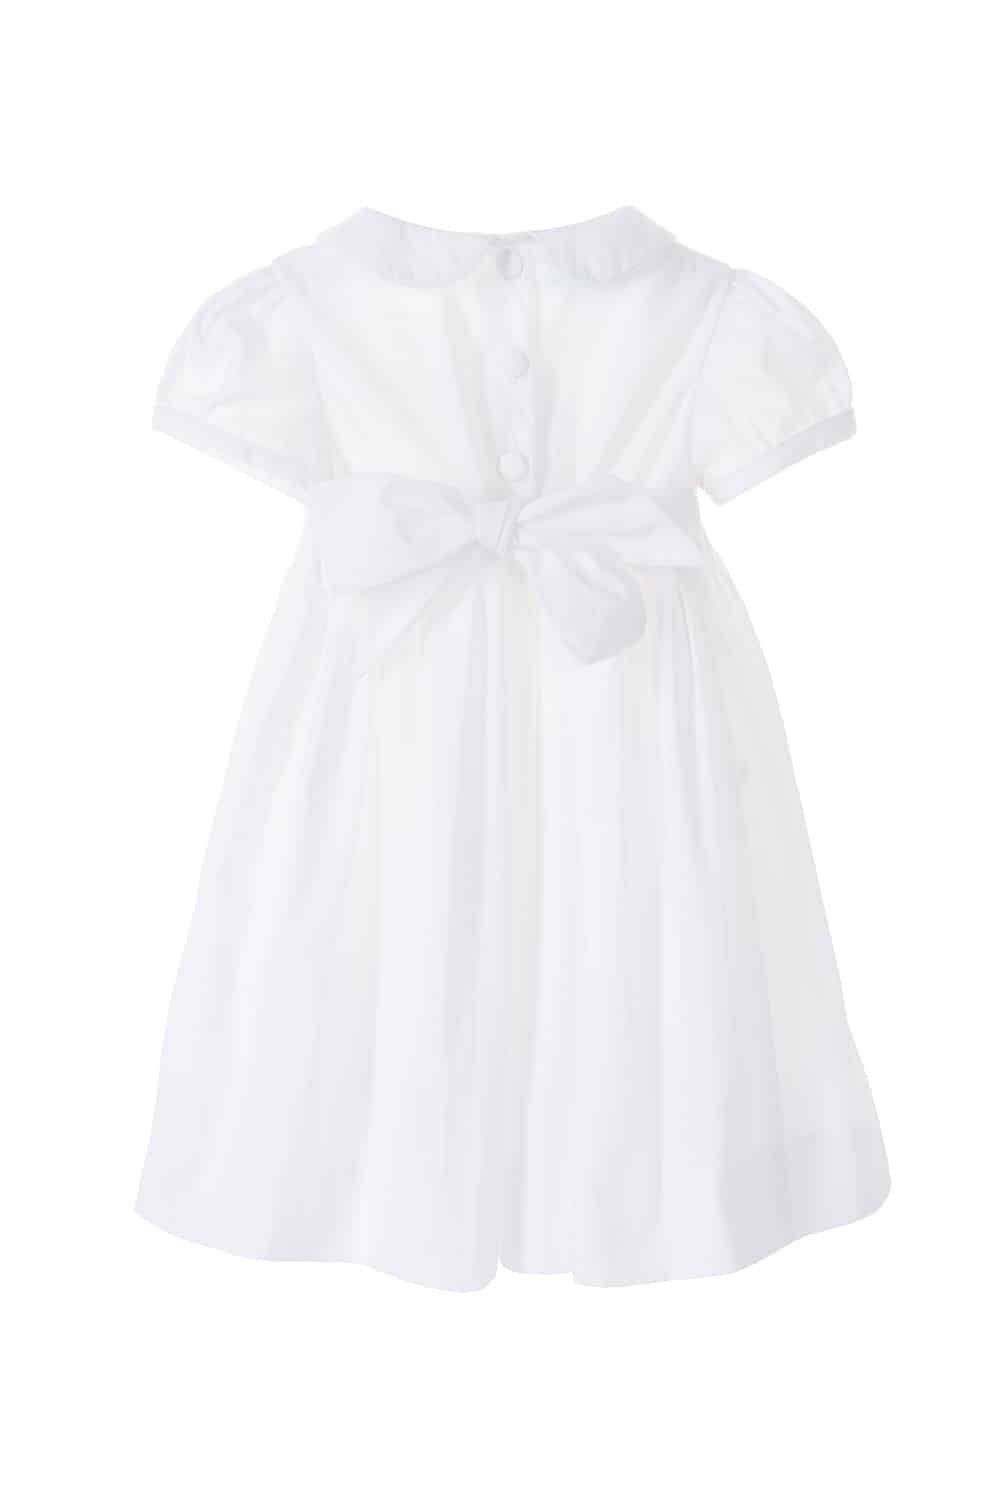 Embroidered Short Sleeve Cotton Girls White Dress | Blanche - Annafie